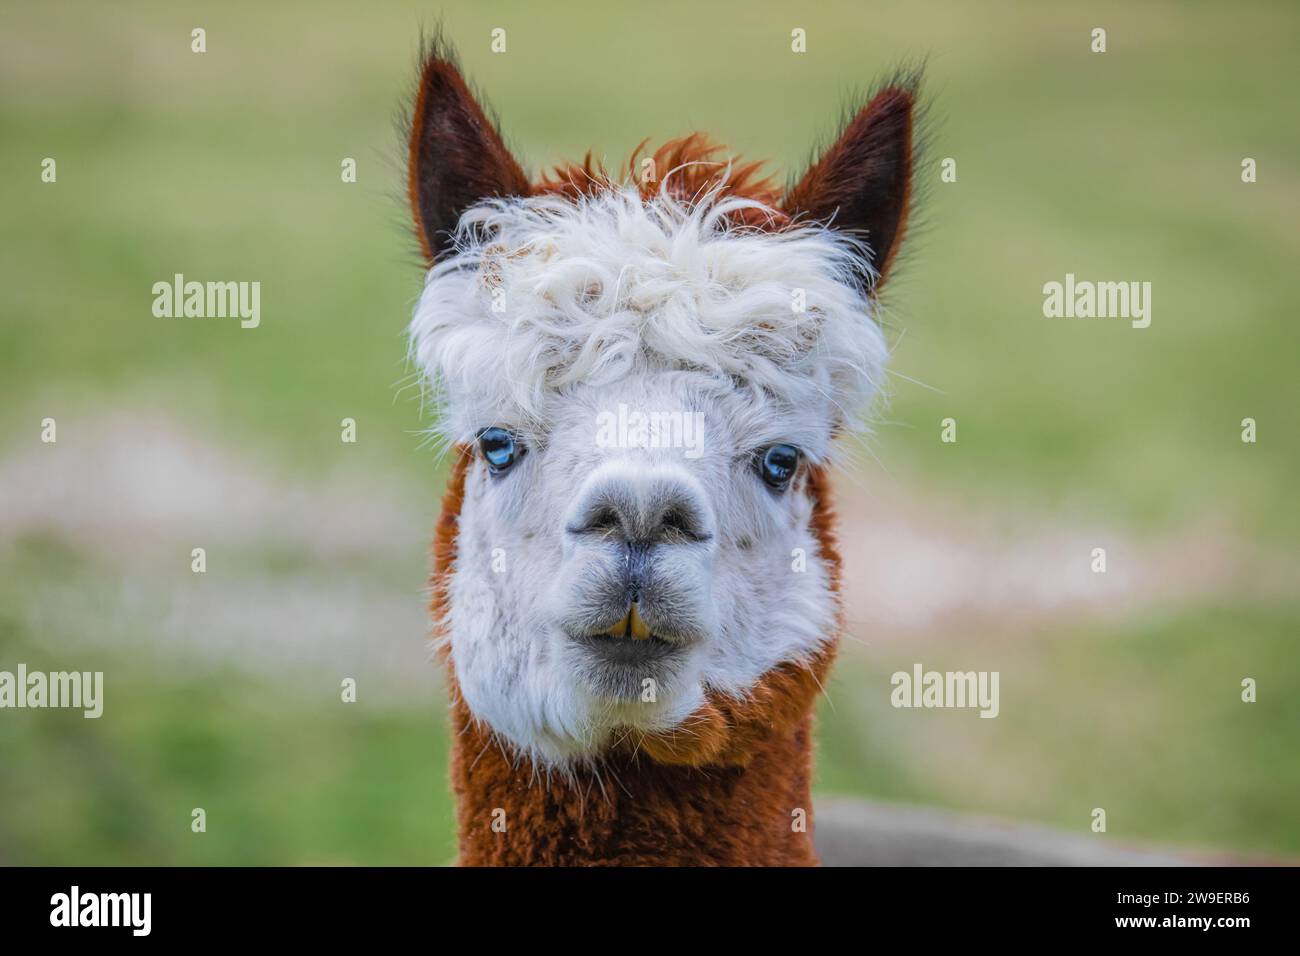 Grazioso alpaca con occhi blu in fattoria. Bellissimo e divertente animale ( Vicugna pacos ) specie di camelide sudamericano. Foto Stock